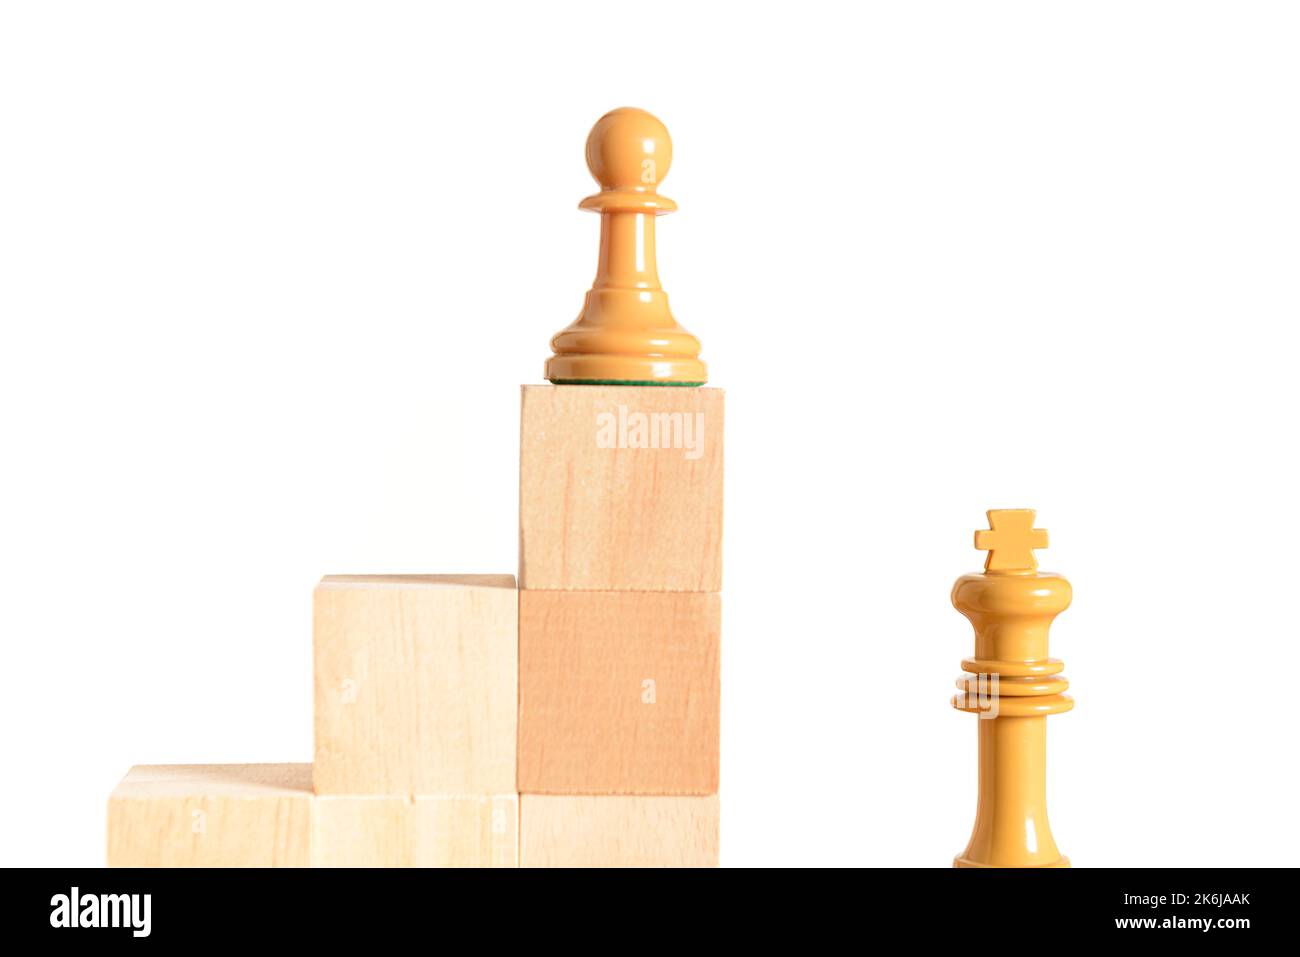 Weiße Schachfigur auf einem Holzblock, der eine Treppe bildet, neben und über dem weißen König. Konzept der Selbstverbesserung. Weißer Hintergrund und Platz für Text Stockfoto